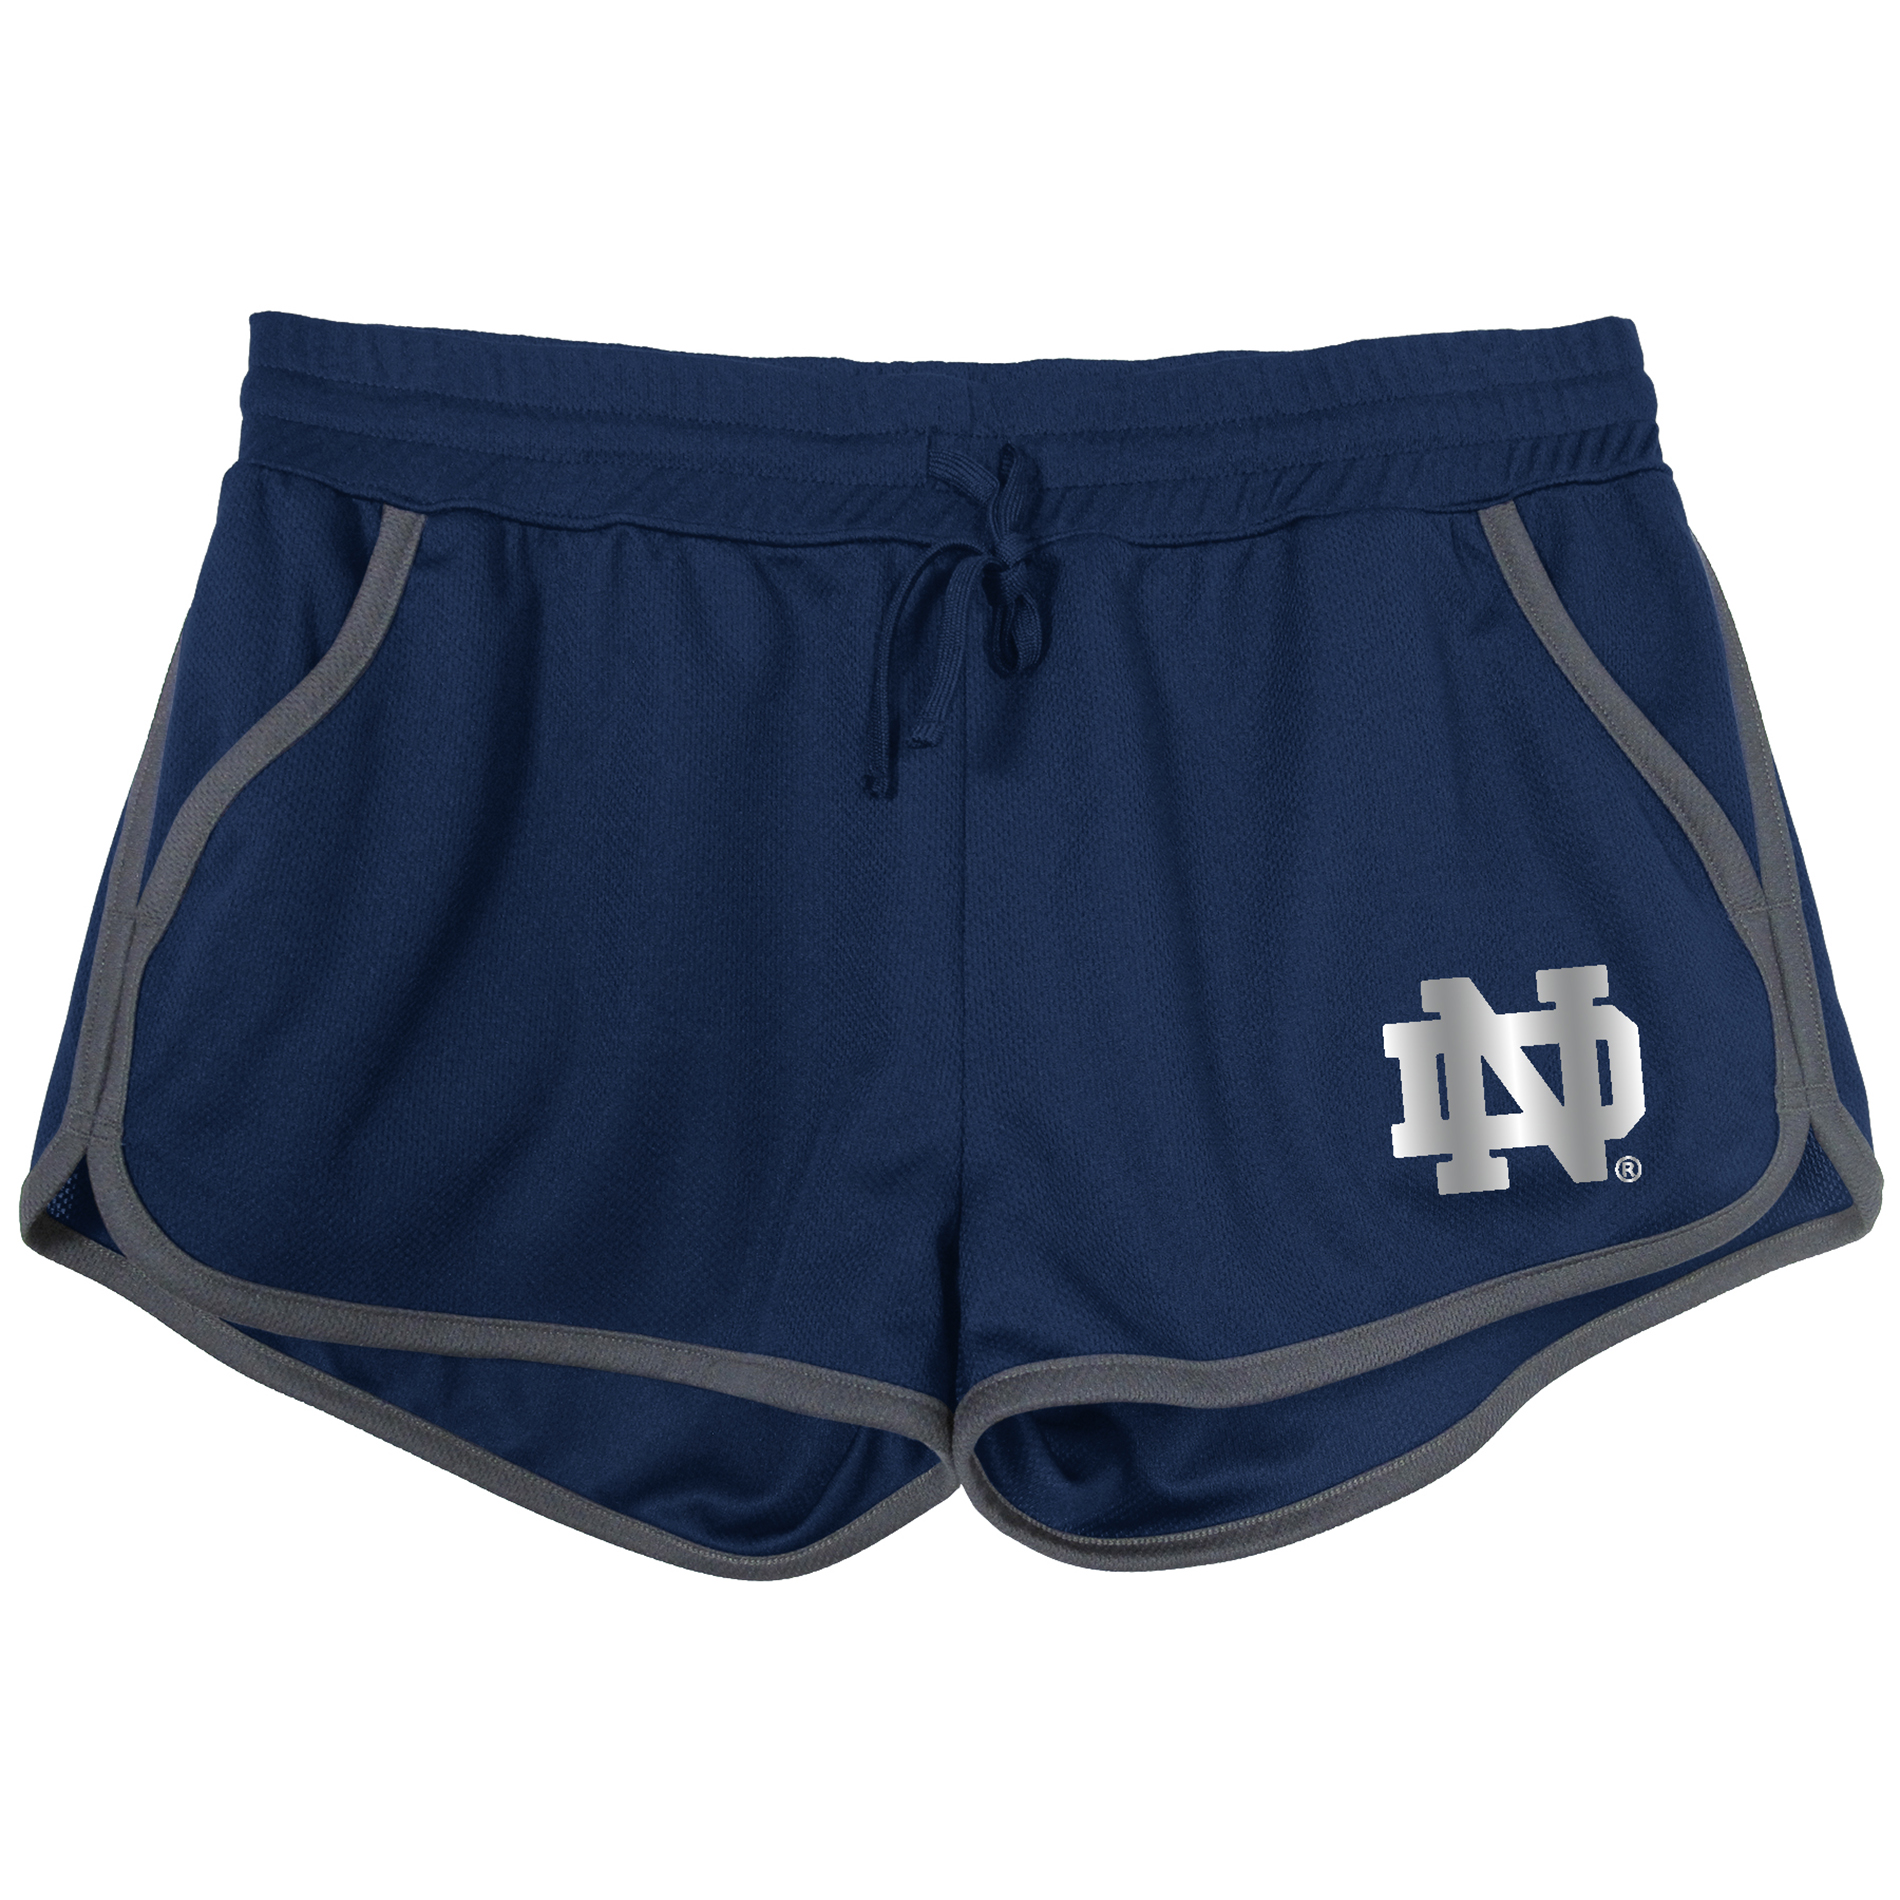 NCAA Women's University of Notre Dame Fighting Irish Mesh Shorts